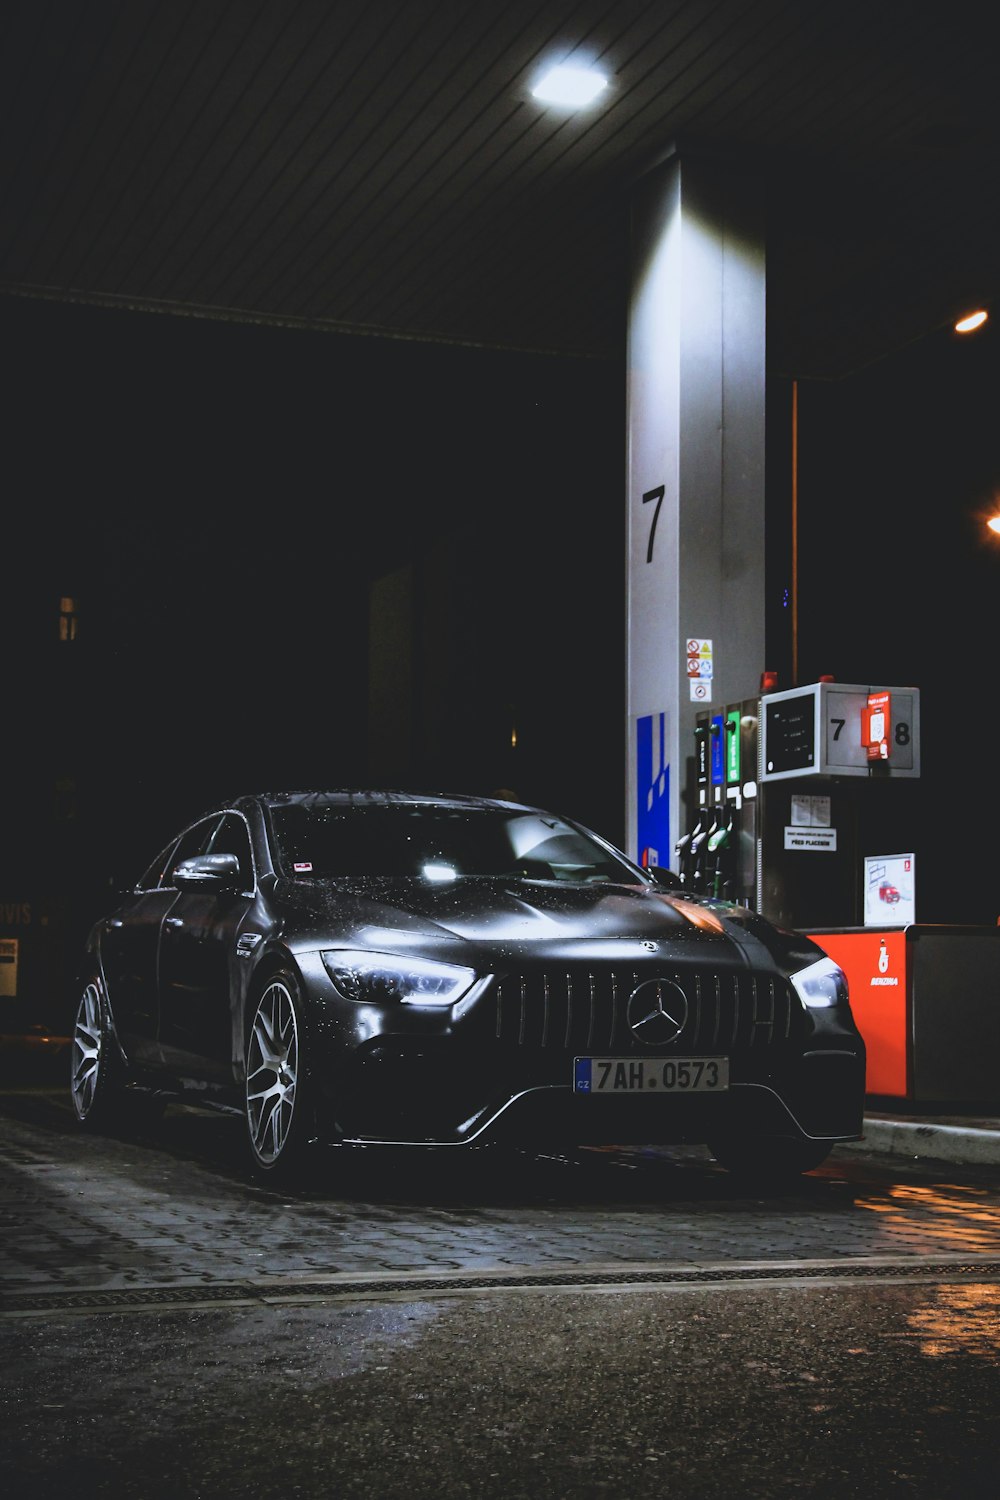 schwarzer Mercedes-Benz an der Tankstelle in der Nacht